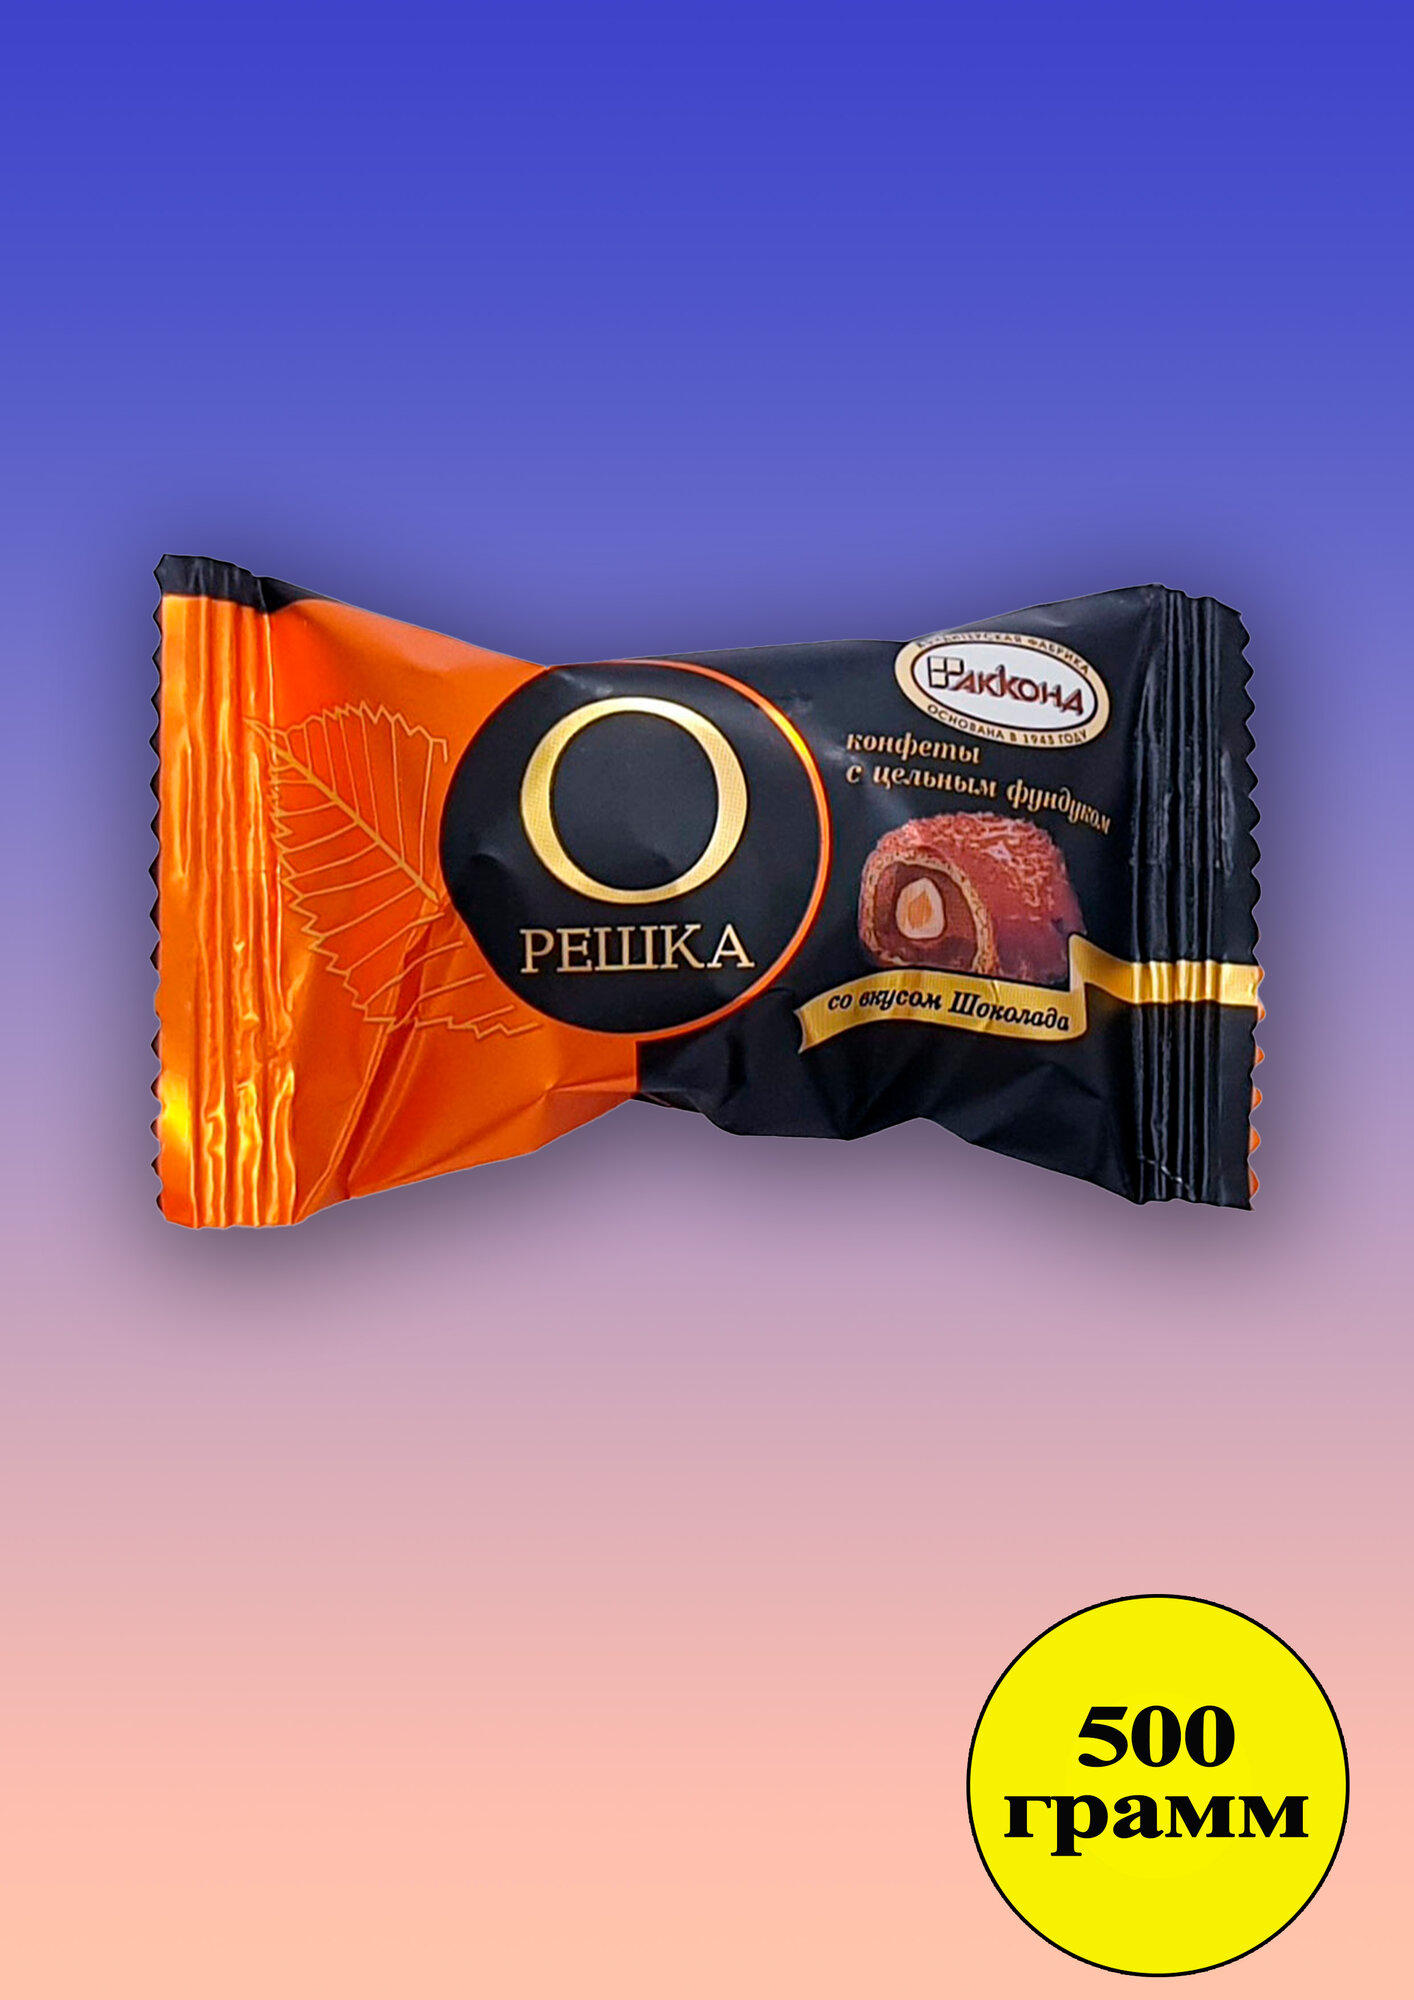 конфеты "Орешка" с цел.фундуком со вкусом Шоколада 500 гр. акконд - фотография № 11